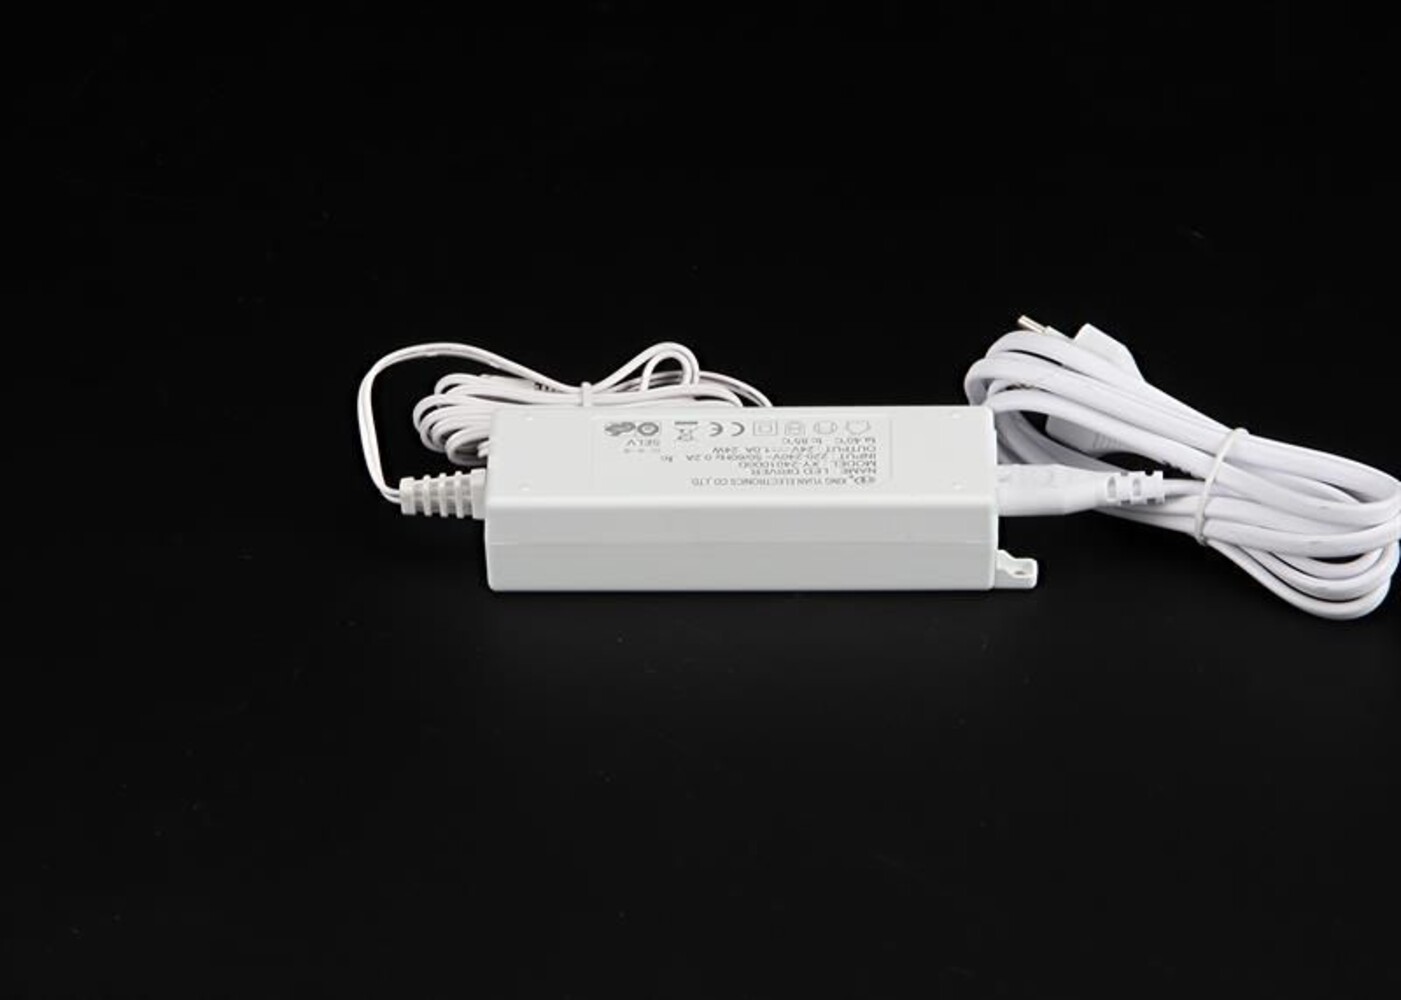 Hochwertiges LED Netzteil von Deko-Light mit konstanter Spannung